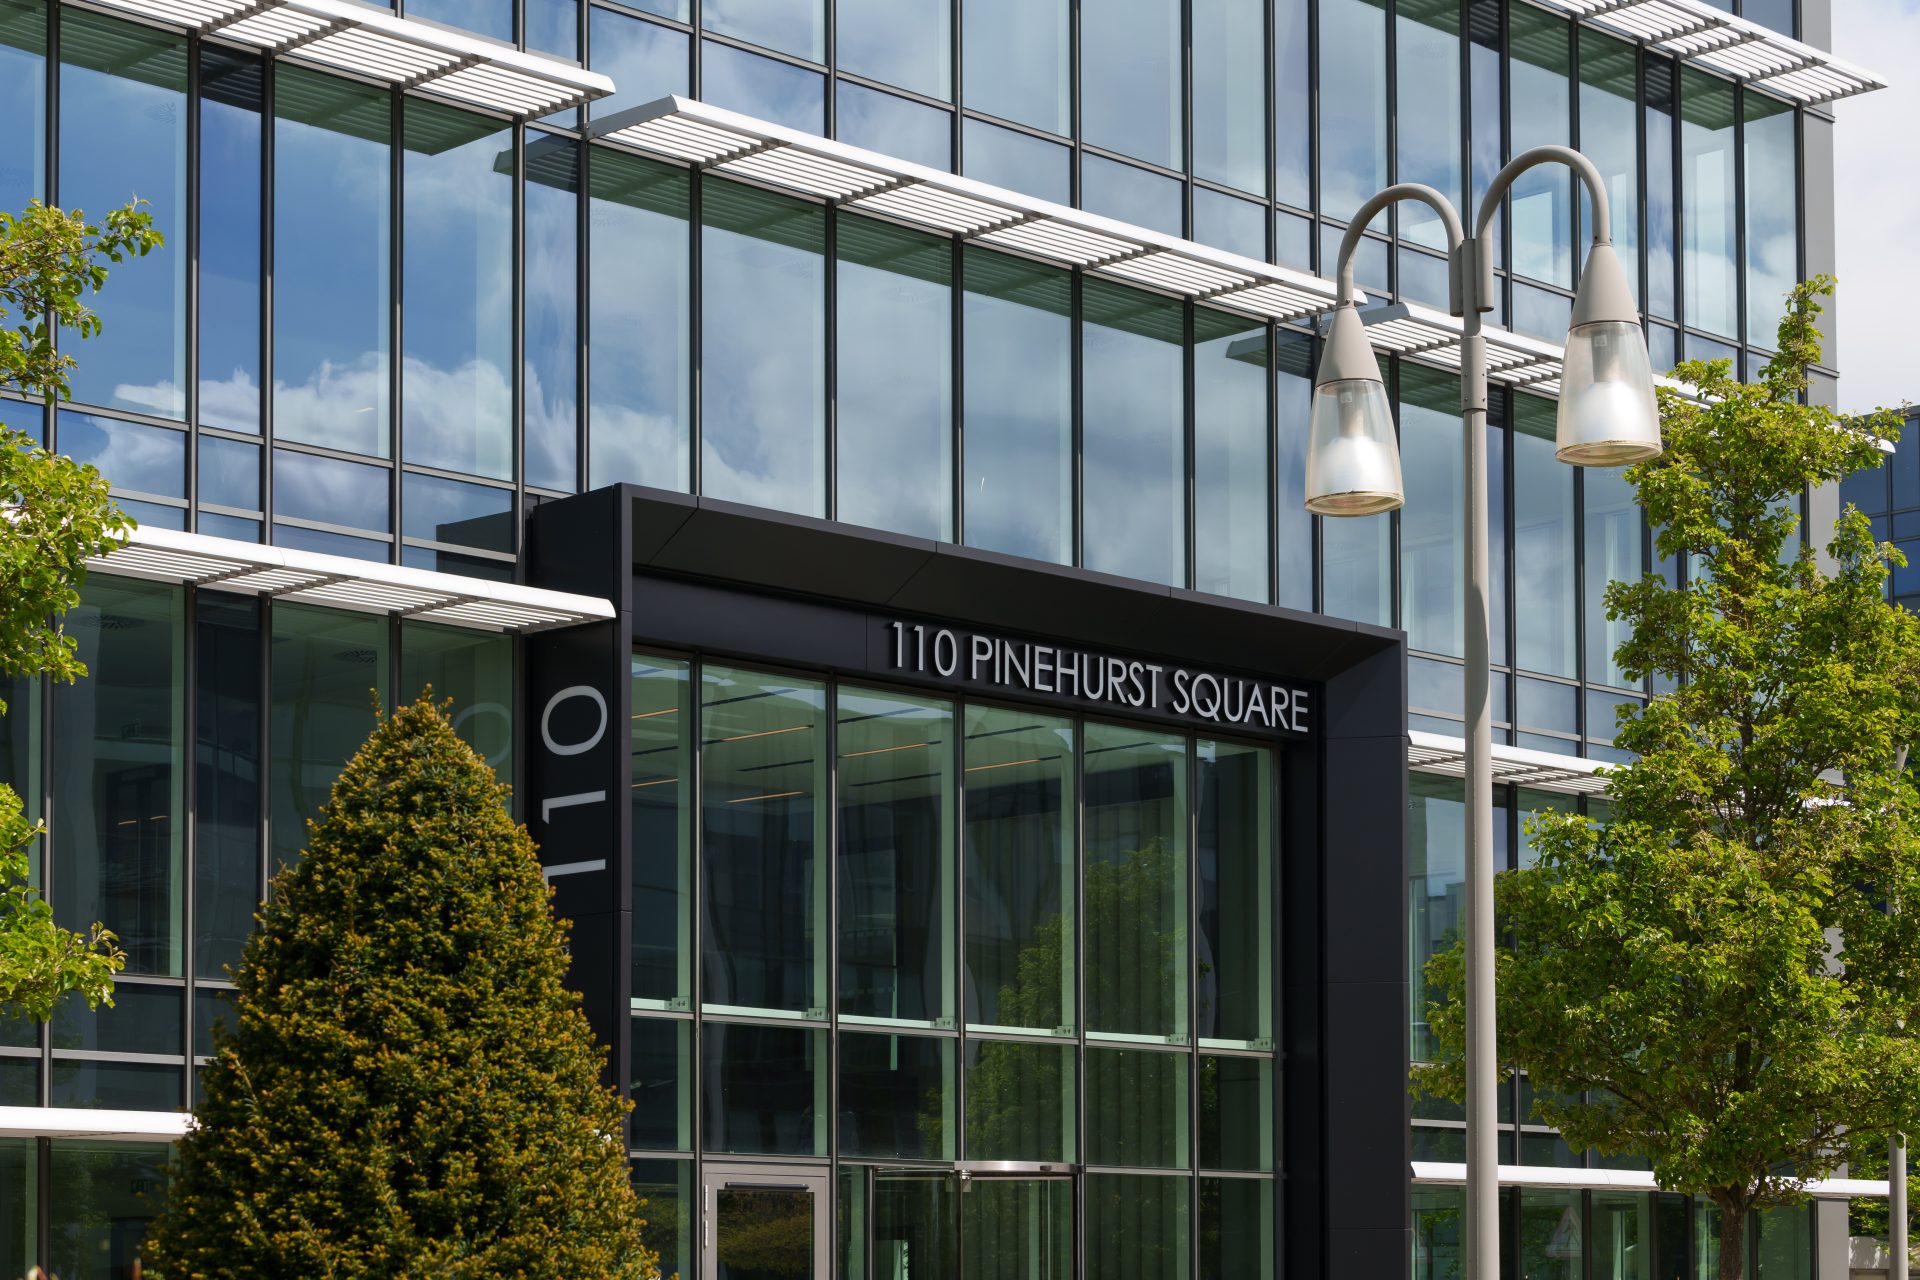 Farnborough Business Park 110 Pinehurst Square 2 Leading global insurer Zurich Insurance moves into Farnborough Business Park